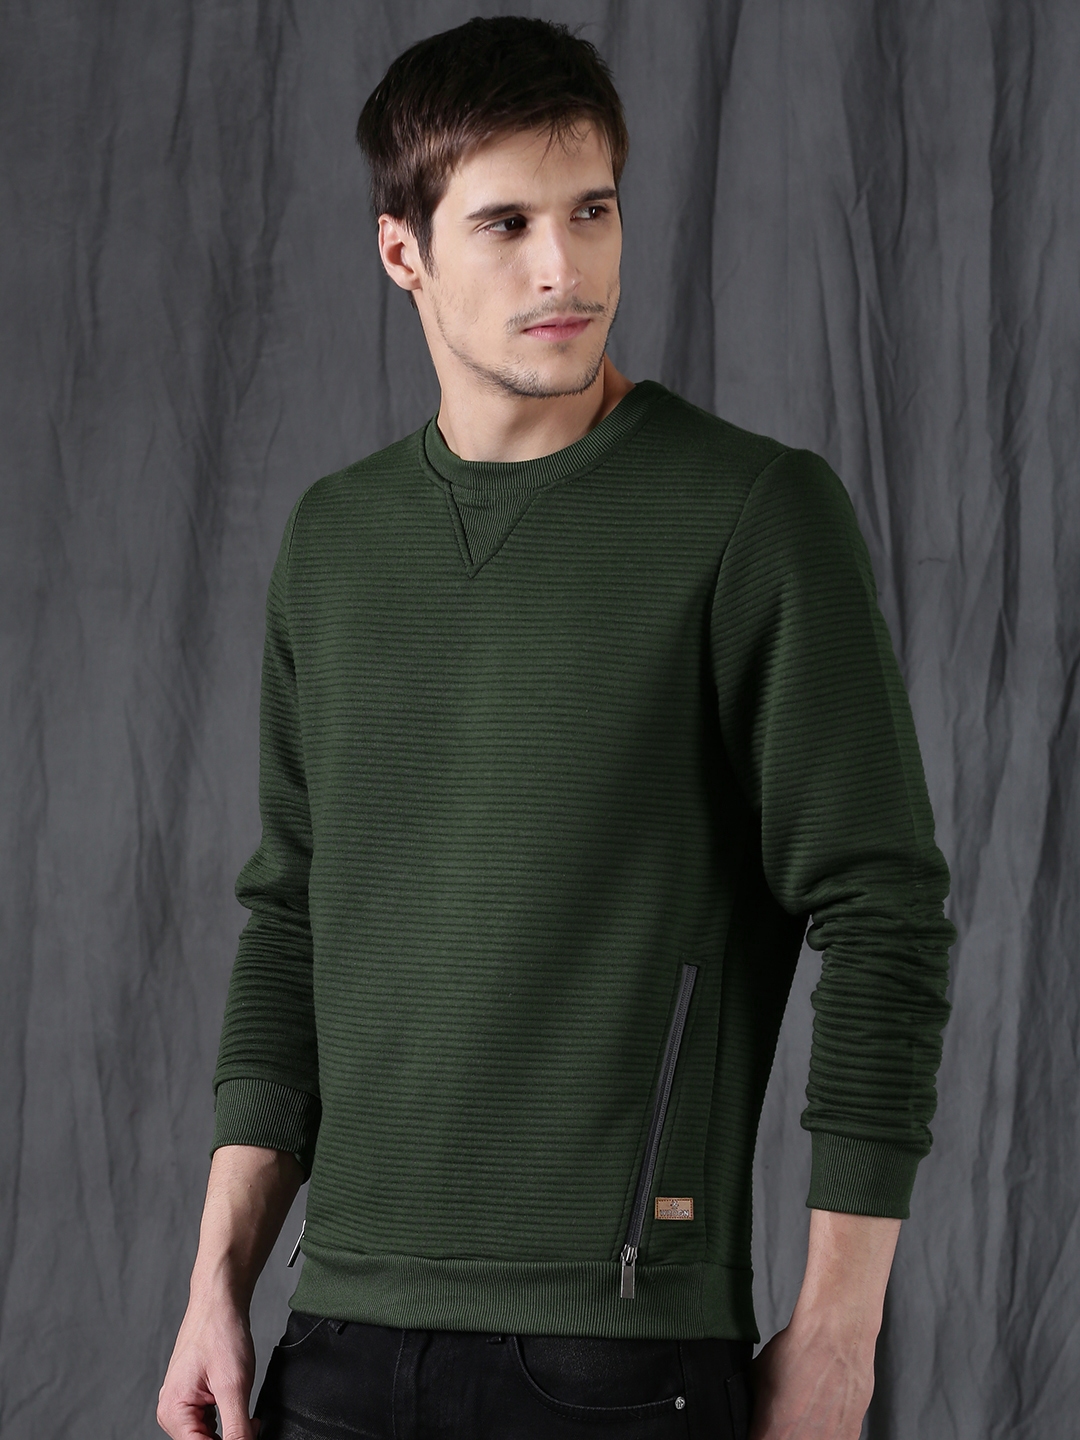 Full Sleeves Olive Green Mens Woolen Hooded Sweatshirt at Rs 500